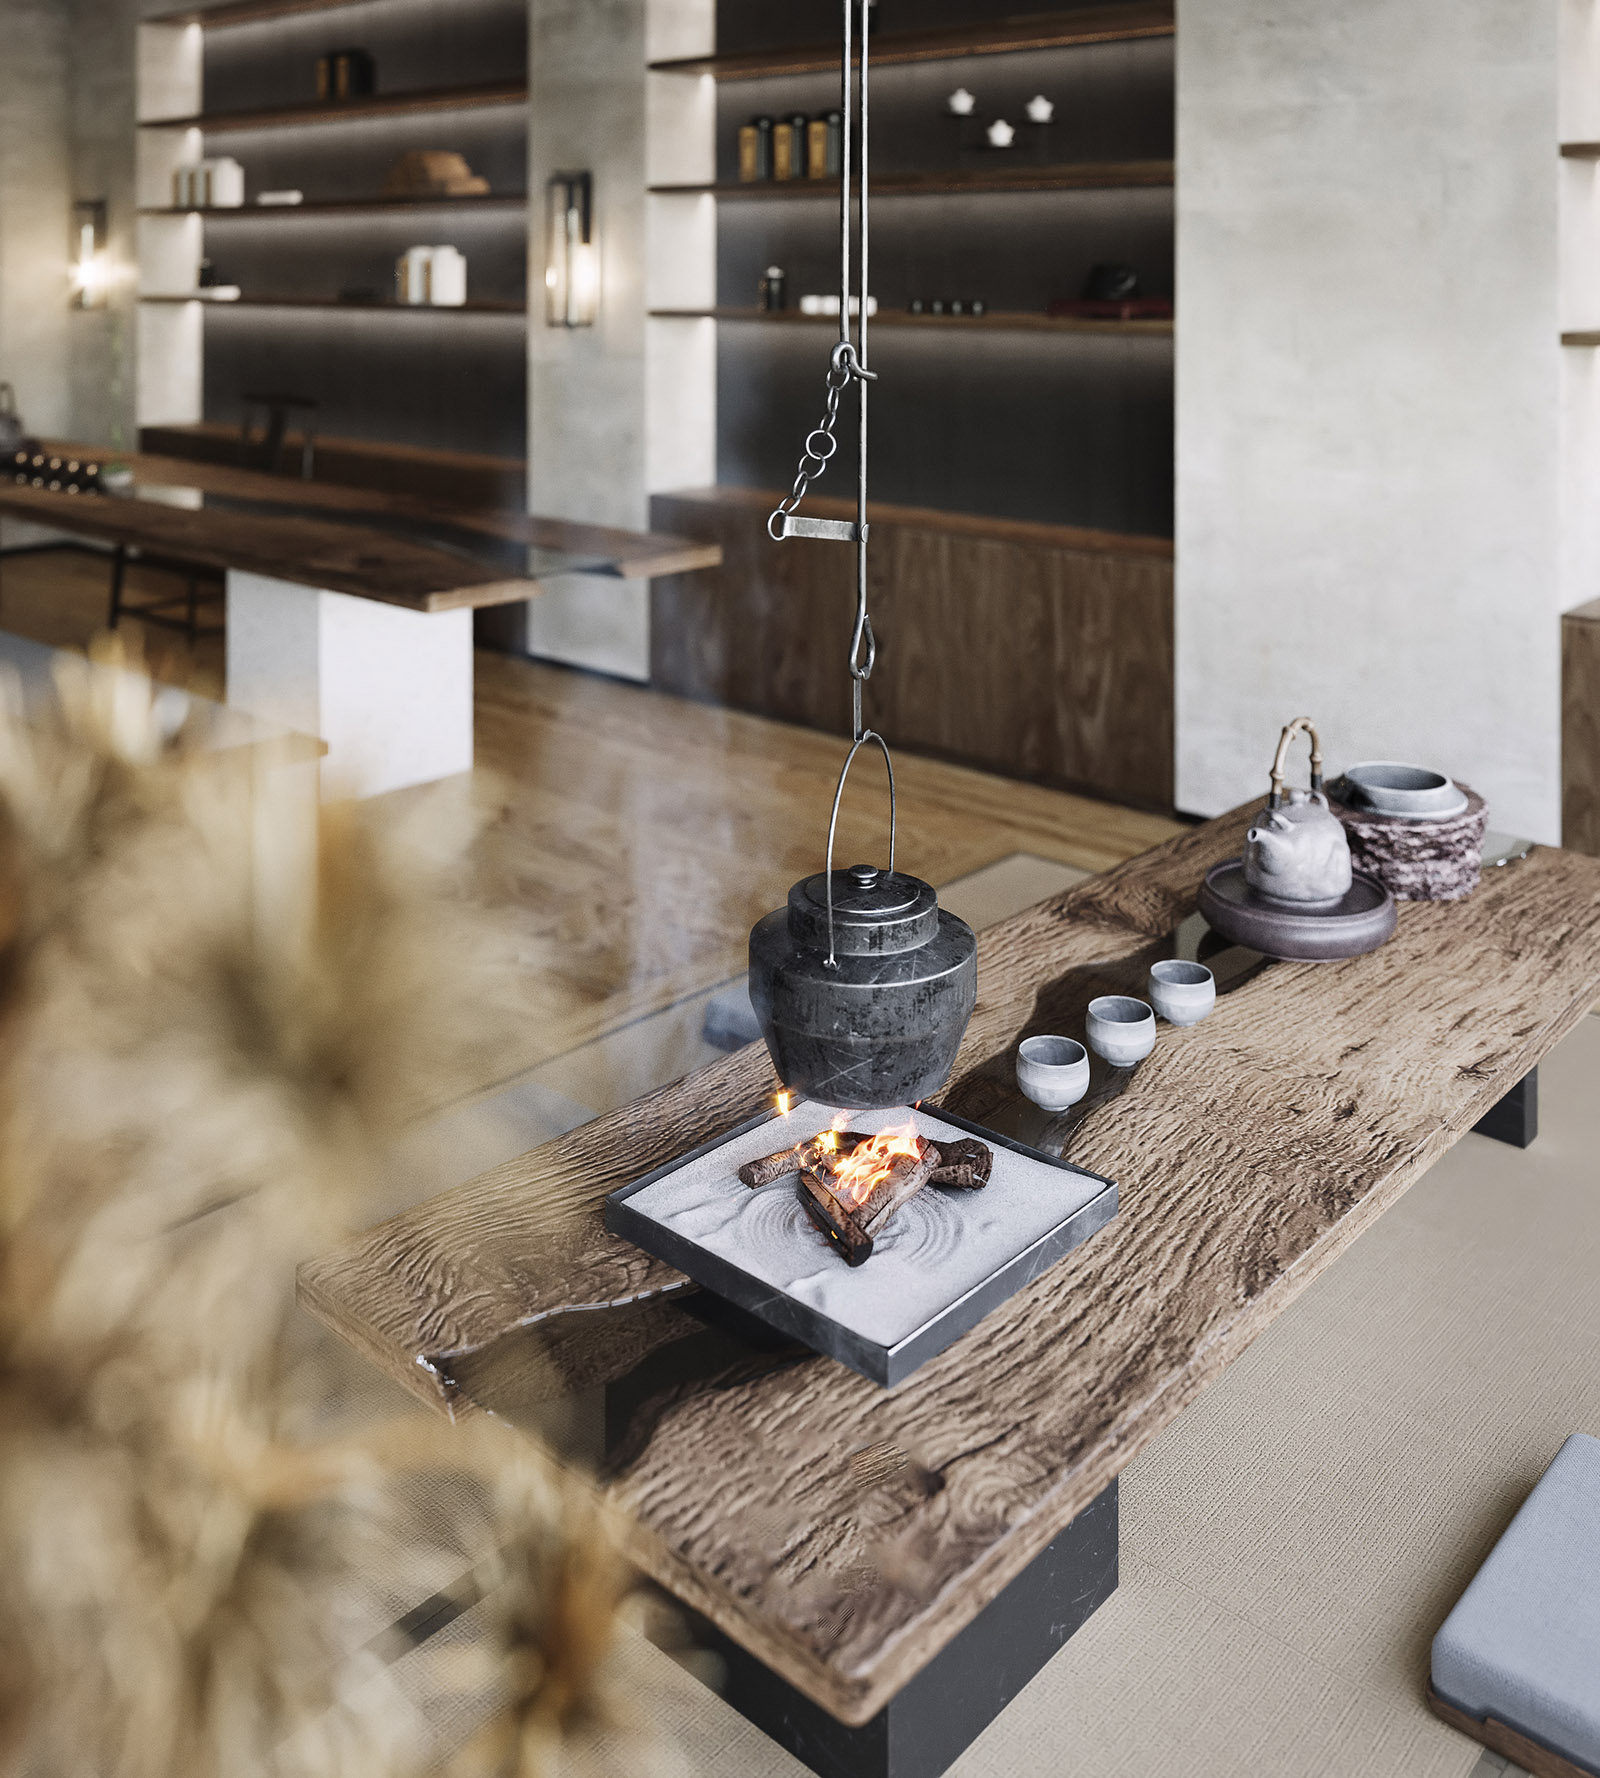 日式風格房間以實木北歐風茶几強調創造帶有藝術美學的純淨茶室空間